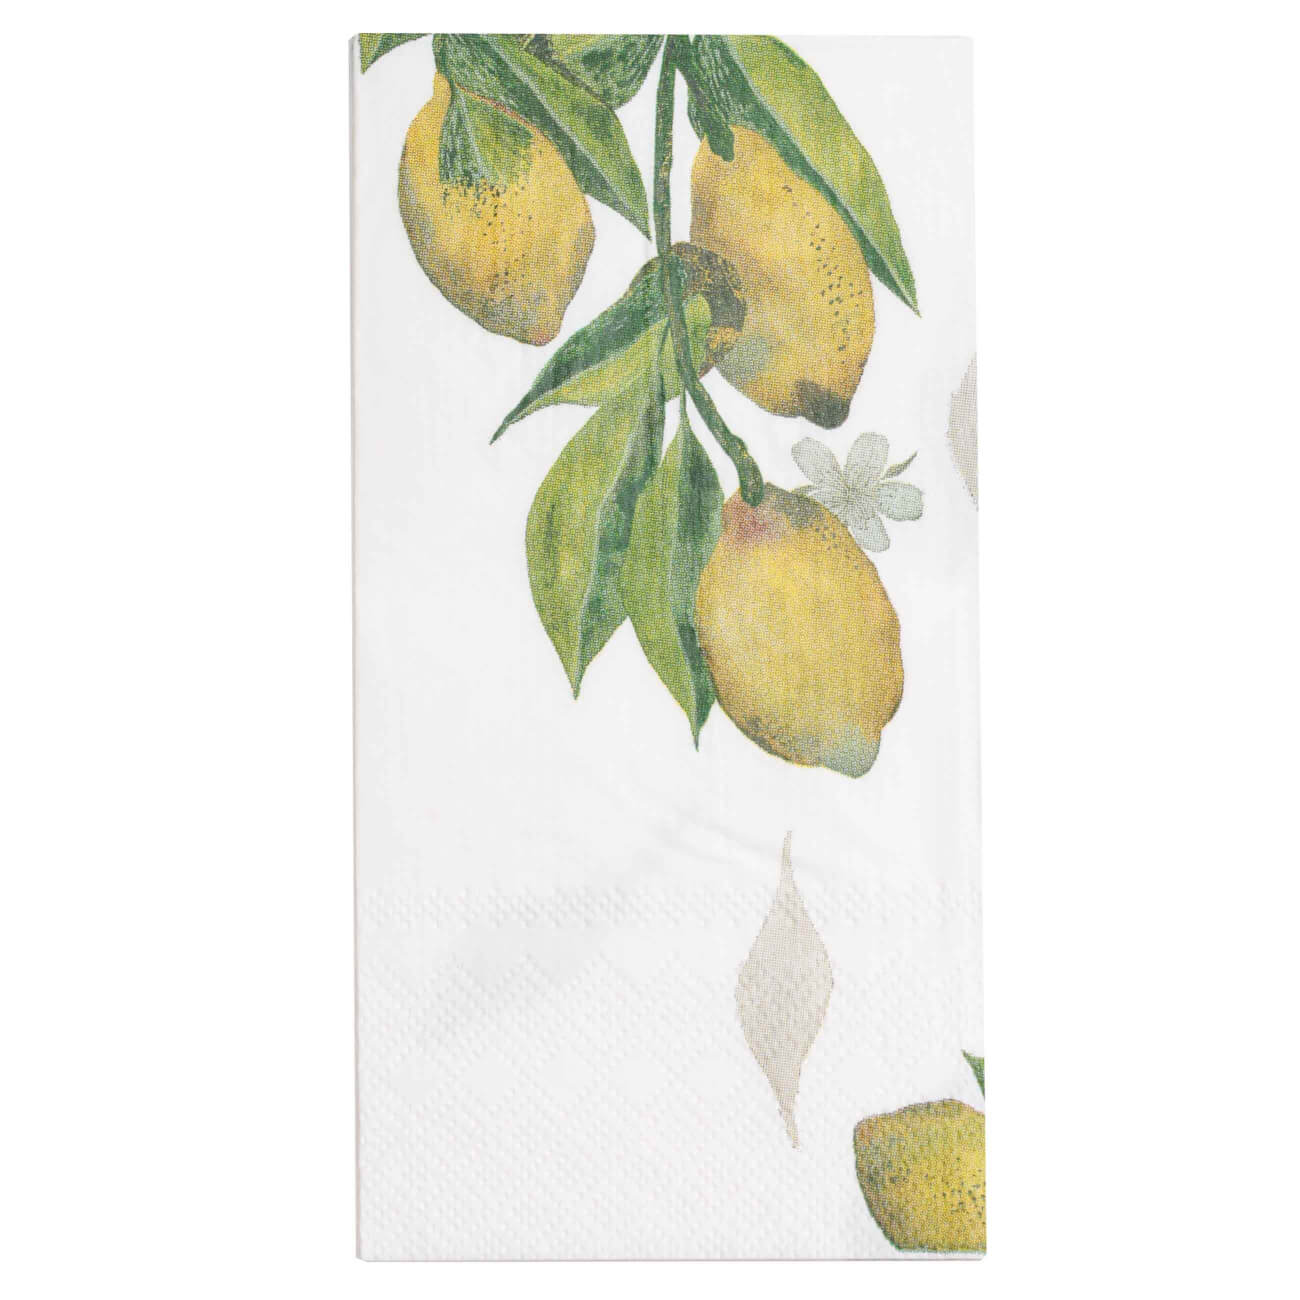 Салфетки бумажные, 33х33 см, 20 шт, прямоугольные, белые, Лимоны на ветке, Sicily in bloom салфетки бумажные 33х33 см 20 шт климт поцелуй art поцелуй